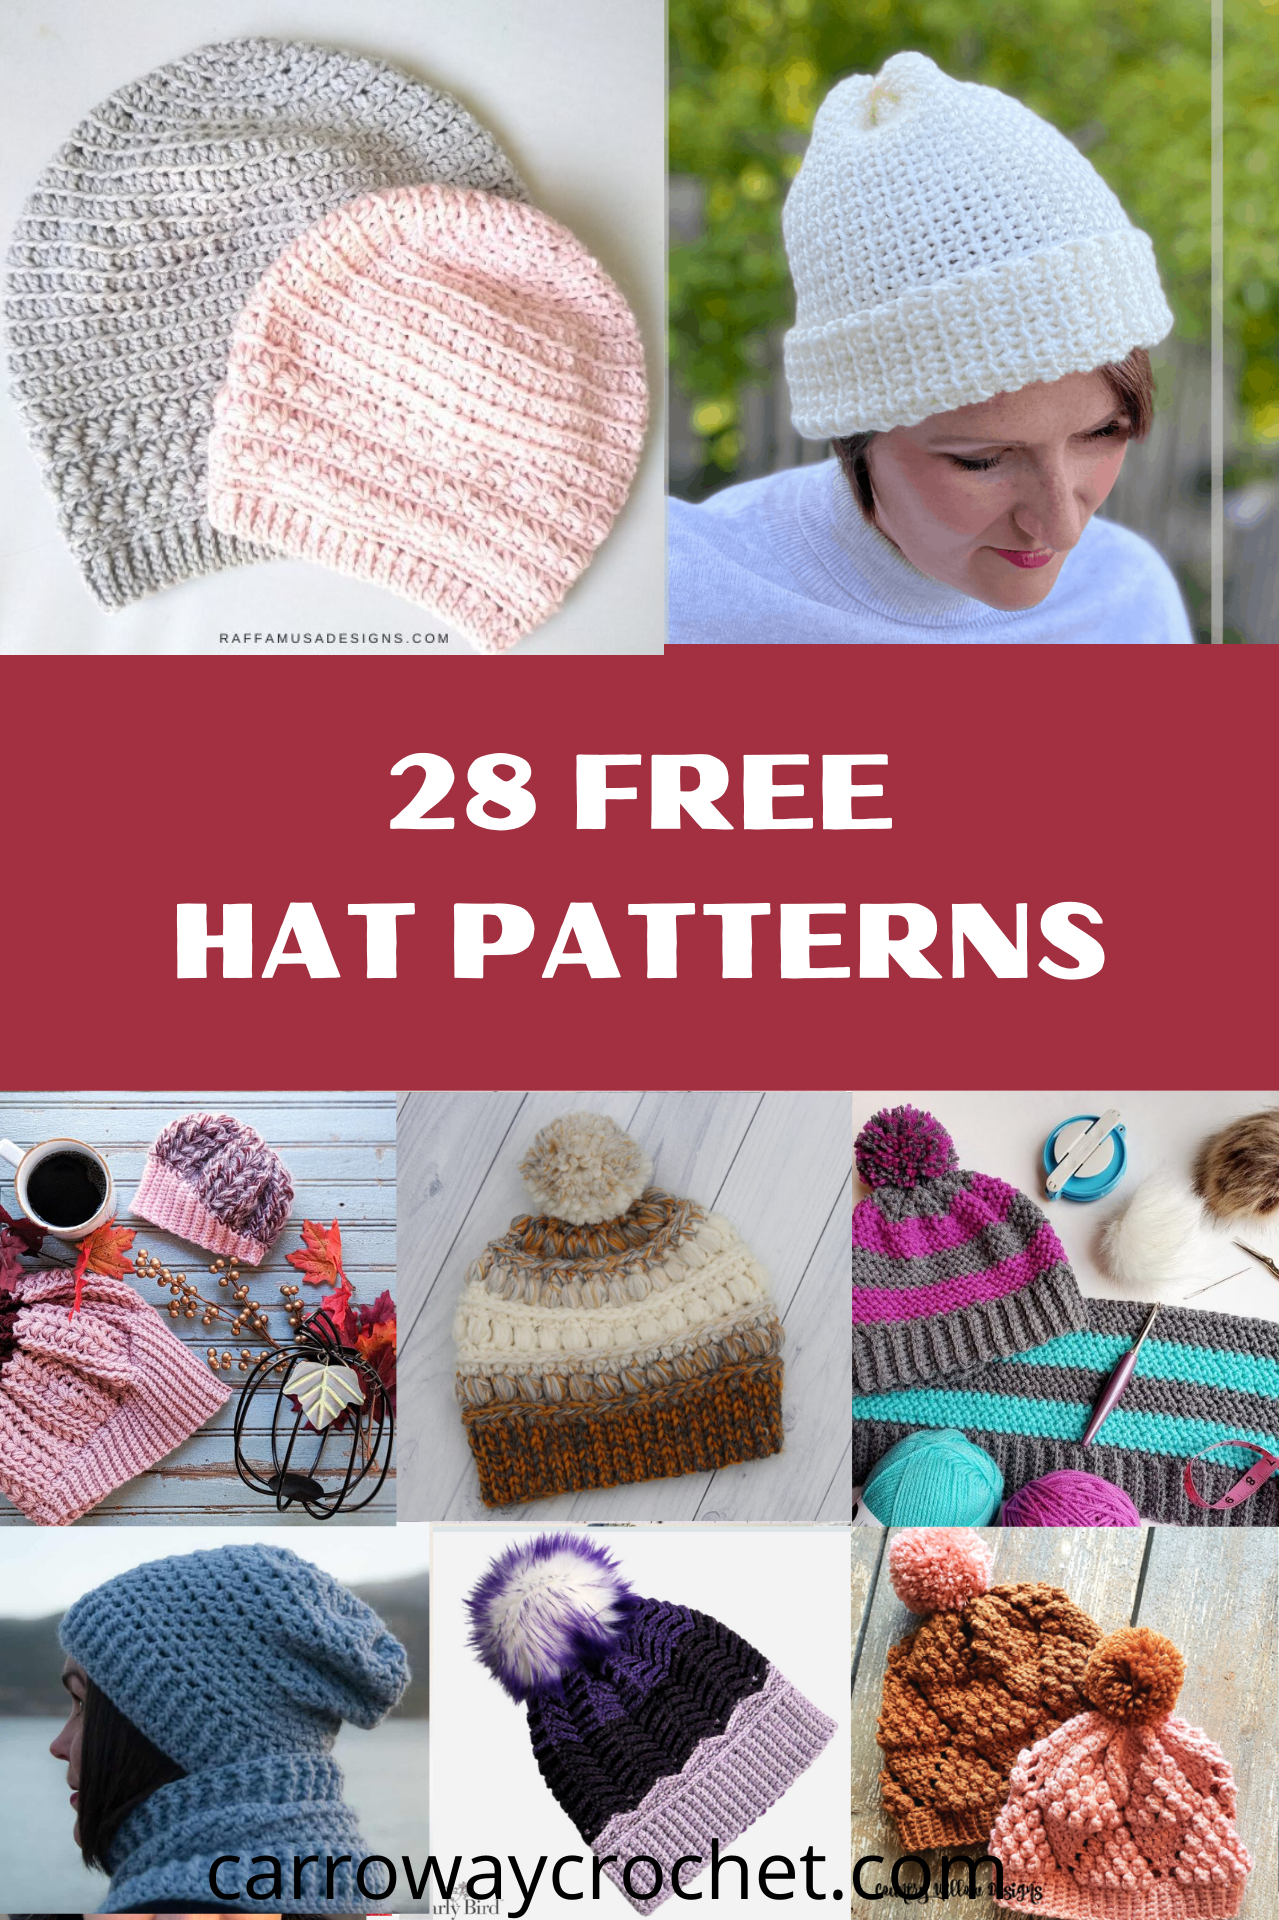 Free Crochet Star Baby Earflap Hat pattern using Bernat Bundle Up yarn